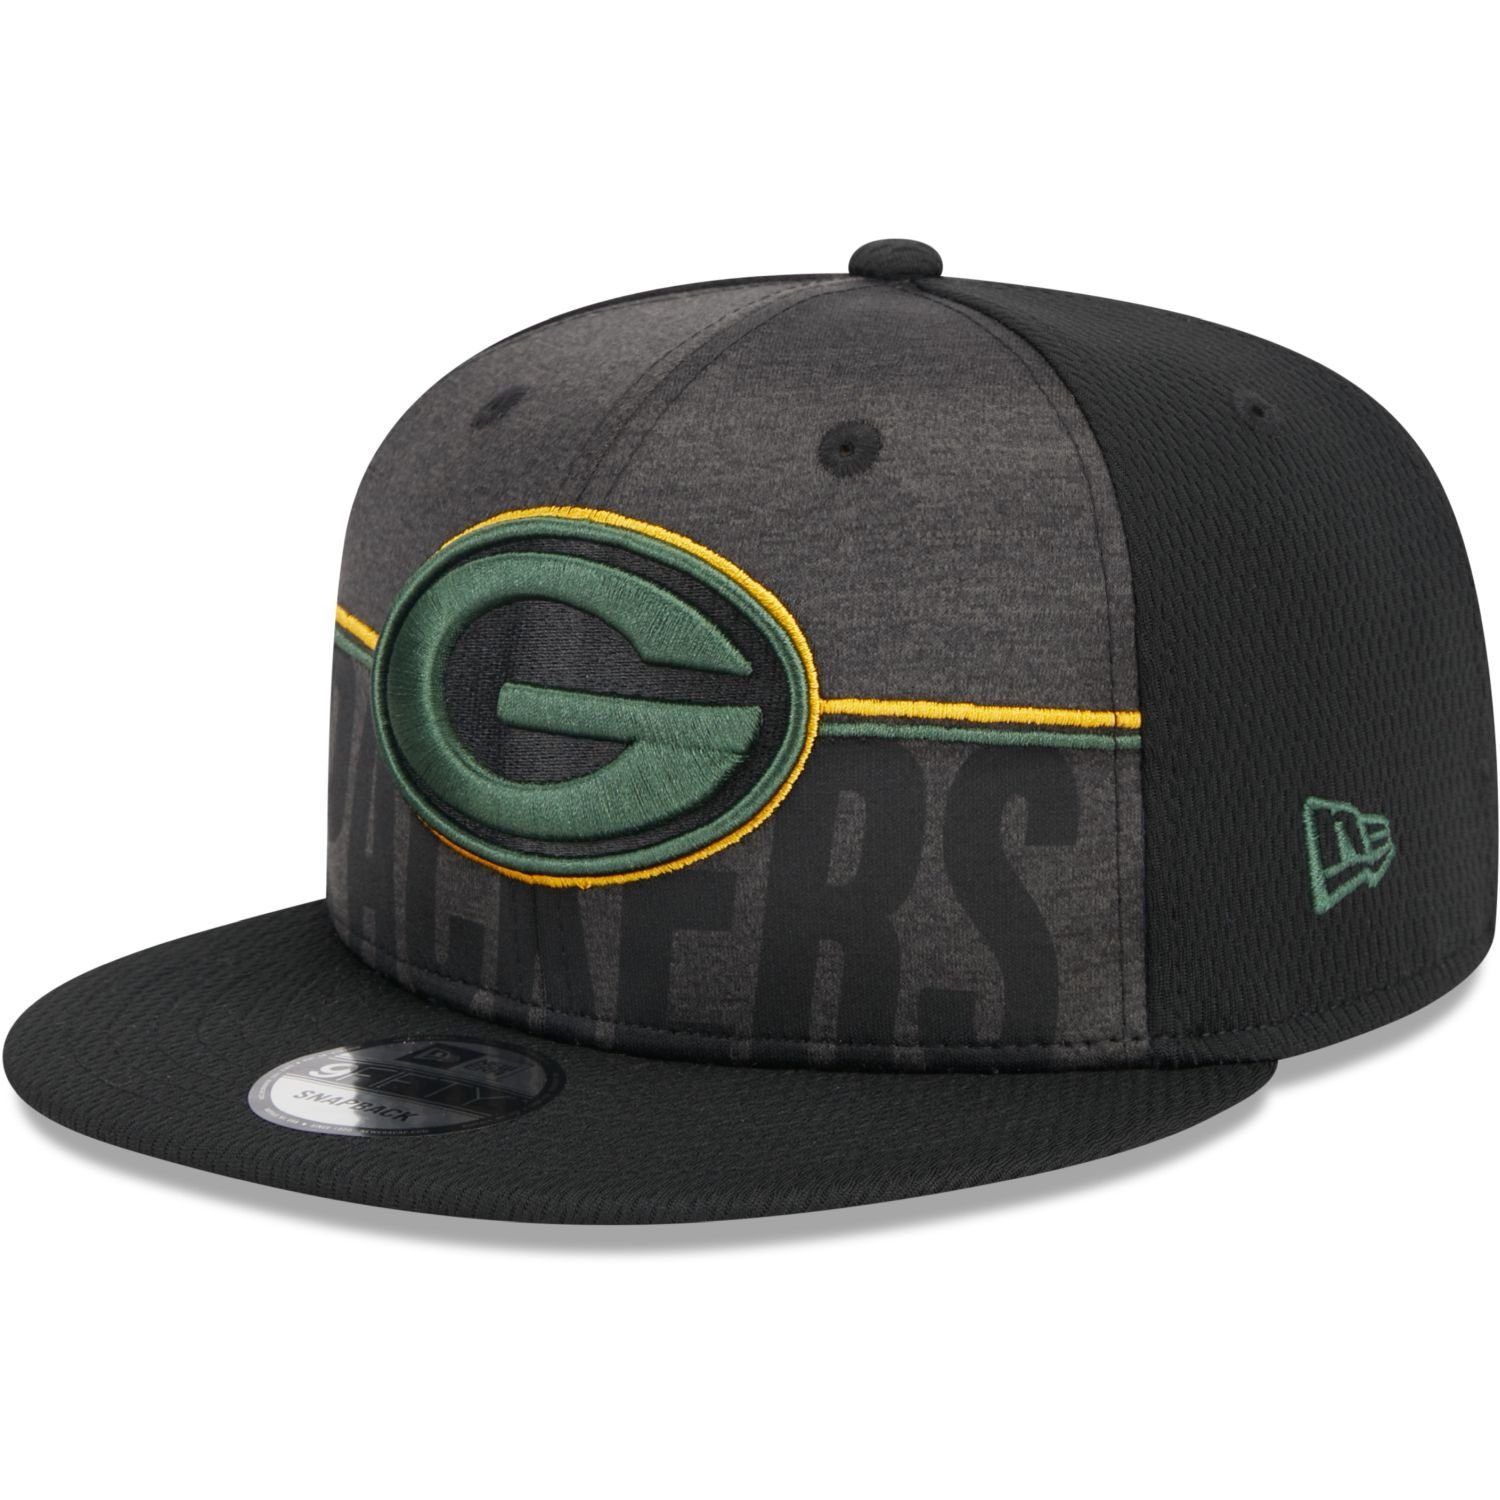 New Era Snapback Cap Green TRAINING 9FIFTY Bay Packers